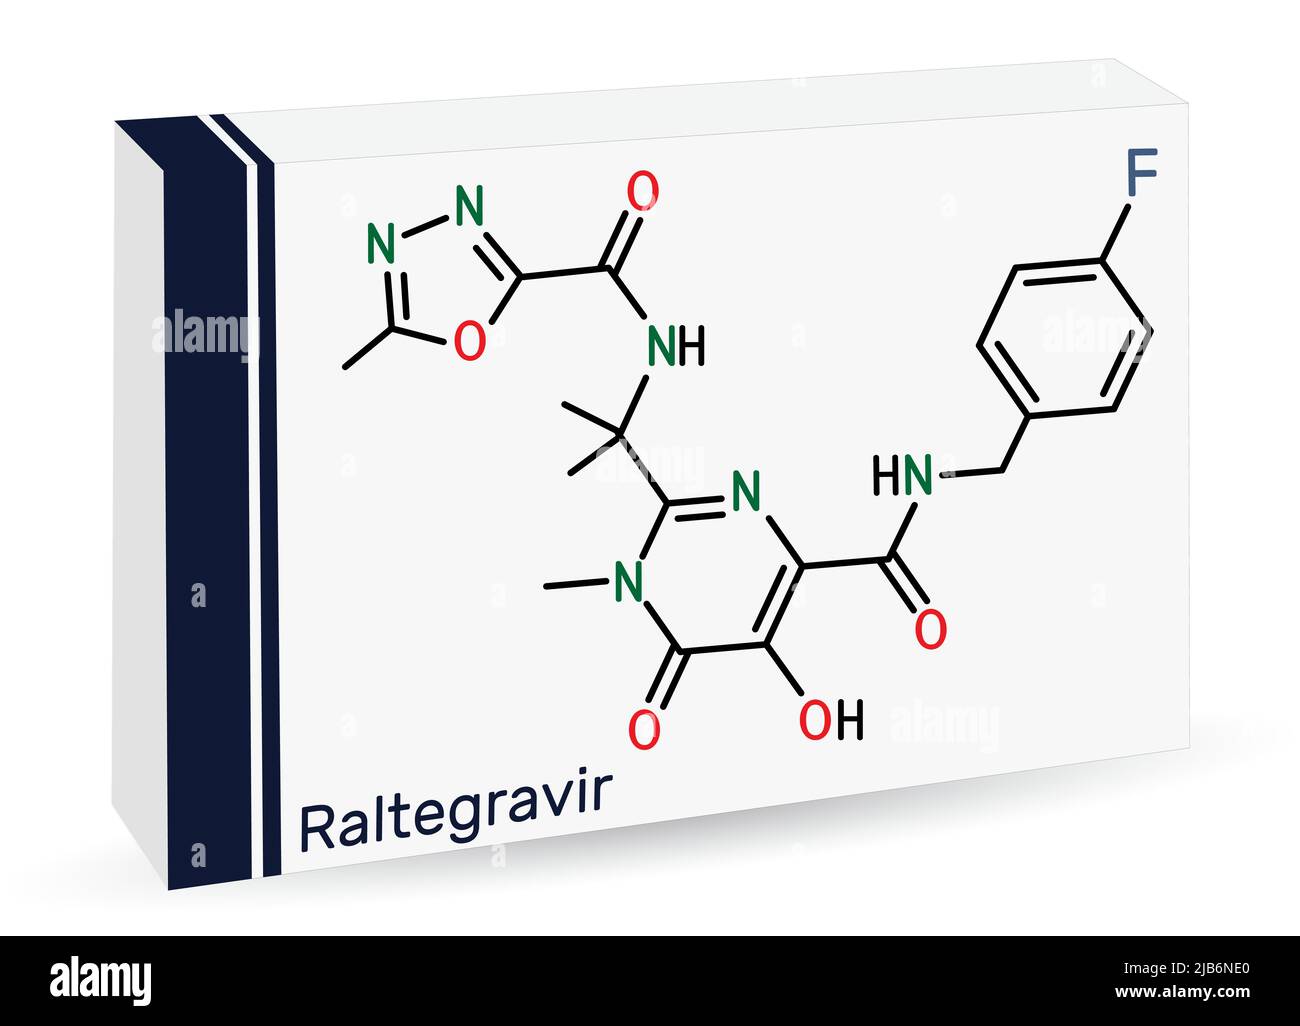 RALTEGRAVIR, RAL-Molekül. Es handelt sich um antiretrovirale Medikamente, die zur Behandlung von HIV und AIDS verwendet werden. Chemische Formel des Skeletts. Papierverpackungen für Medikamente. Vektorgrafik Stock Vektor